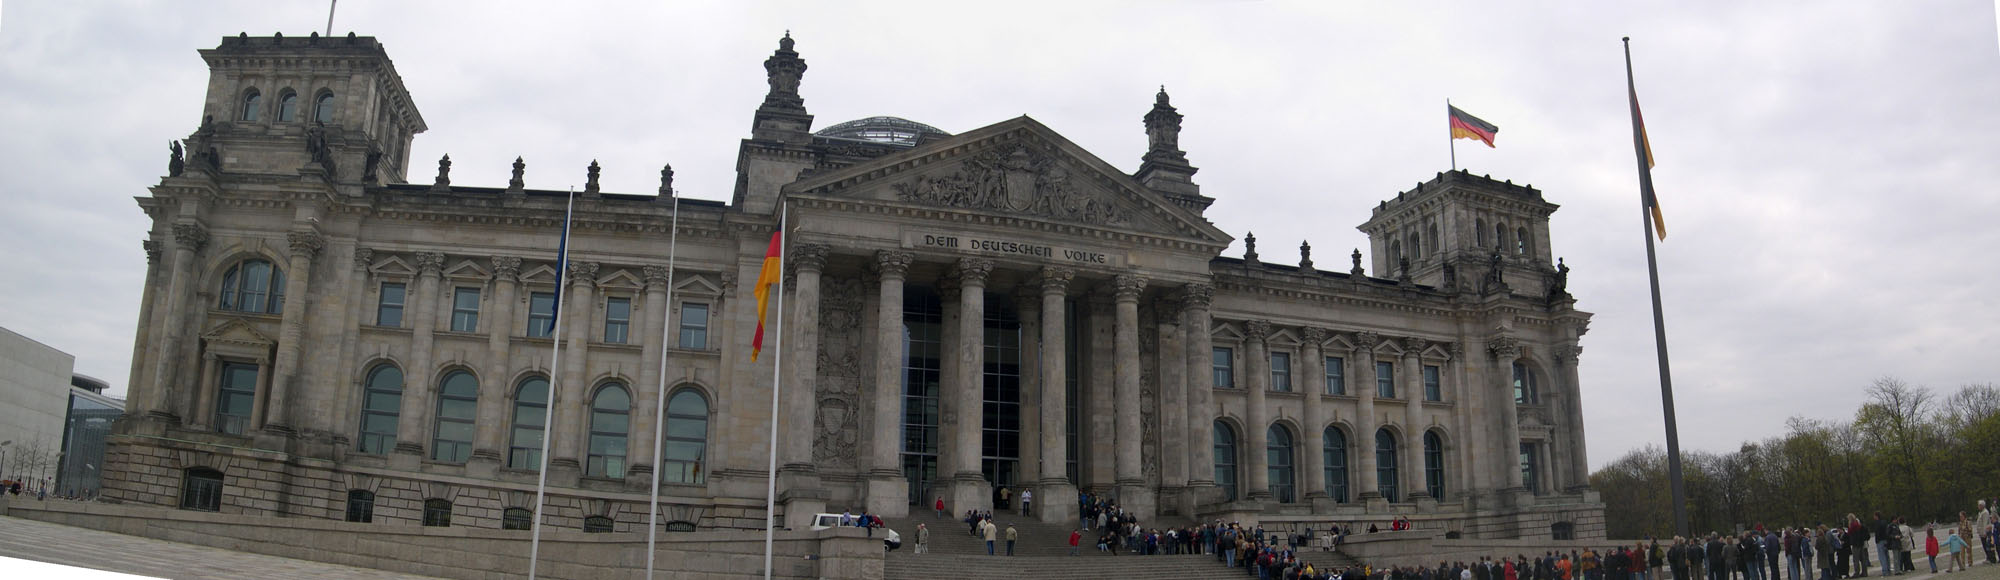 Parlement de Berlin